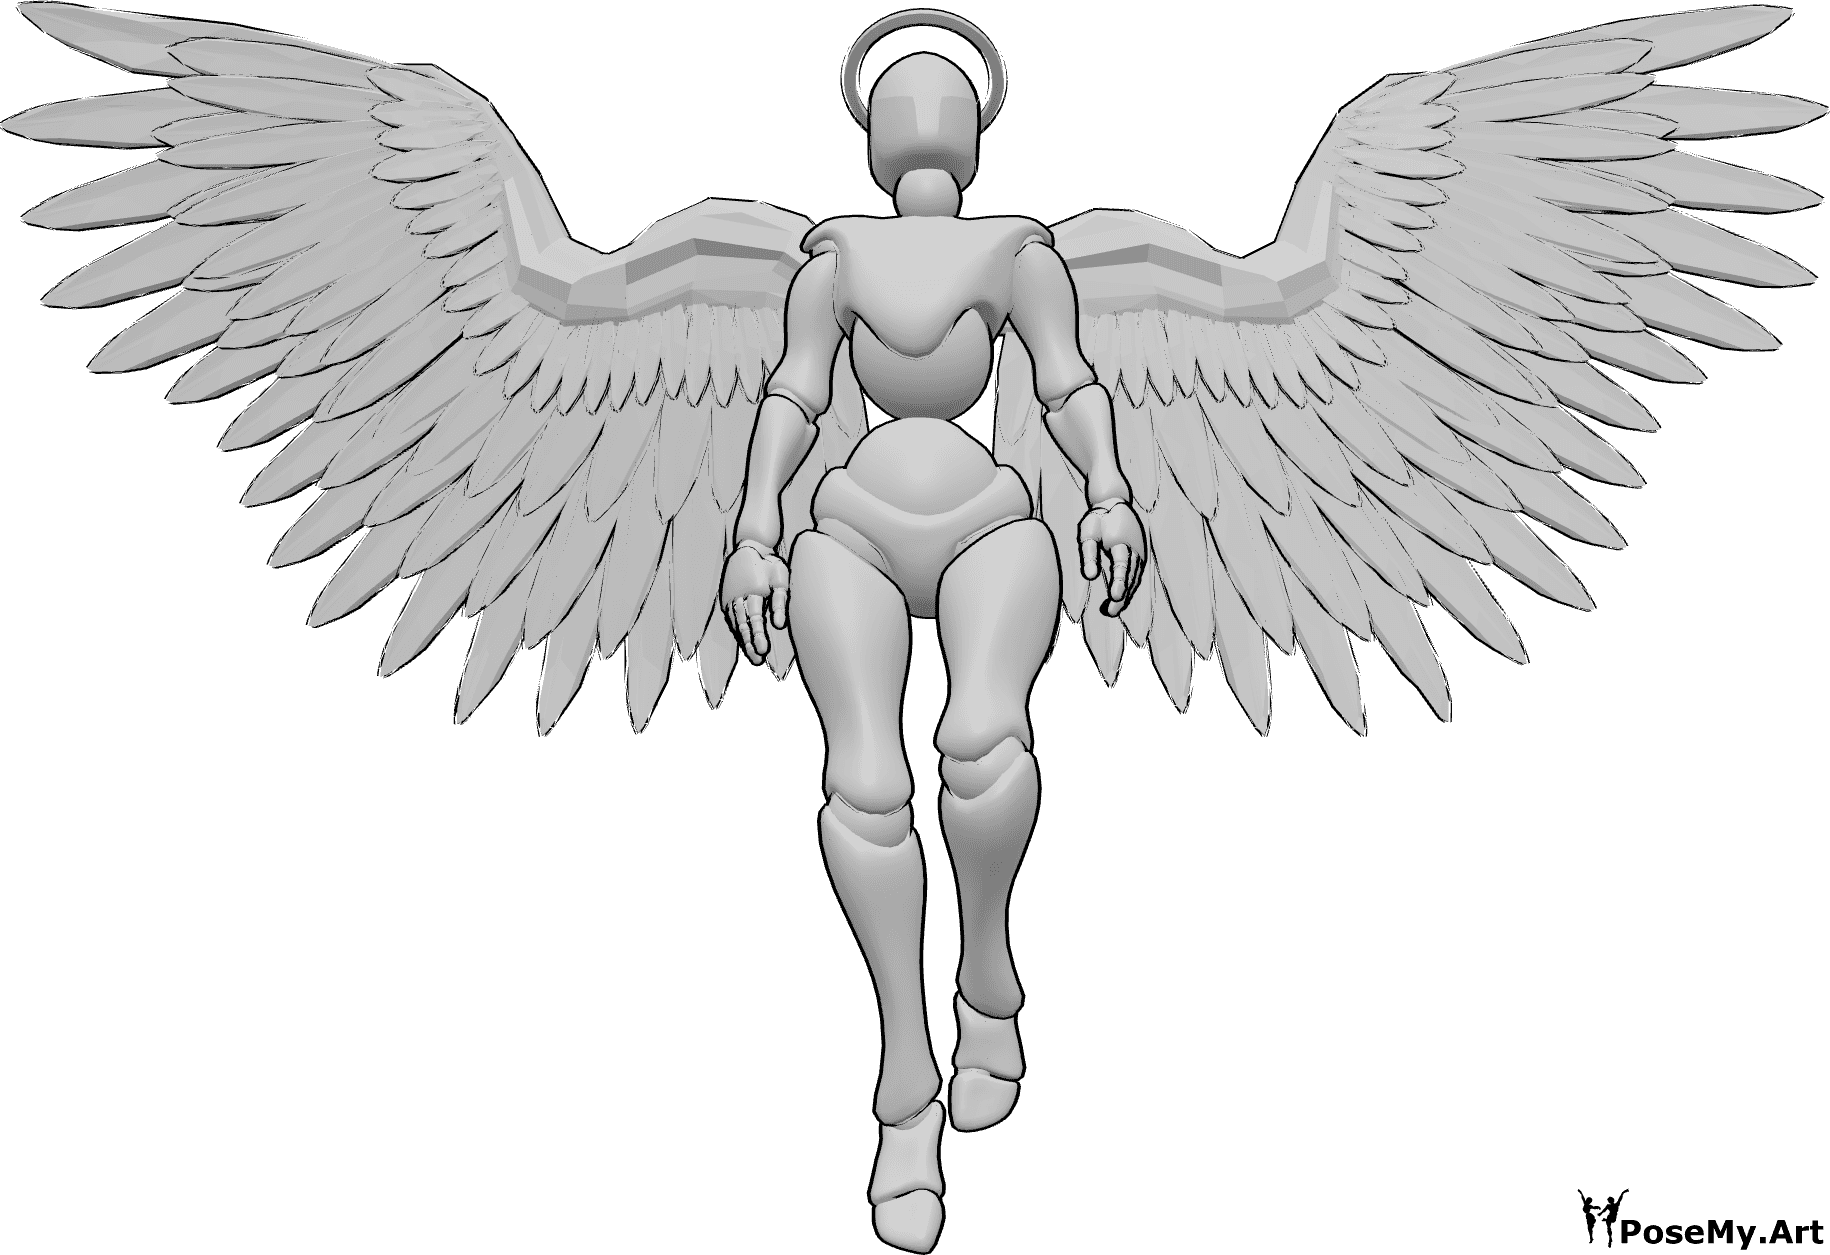 Posen-Referenz- Weiblicher Engel fliegende Pose - Weiblicher Engel mit Heiligenschein und Flügeln fliegt, schaut nach oben, Engel Zeichnung Referenz